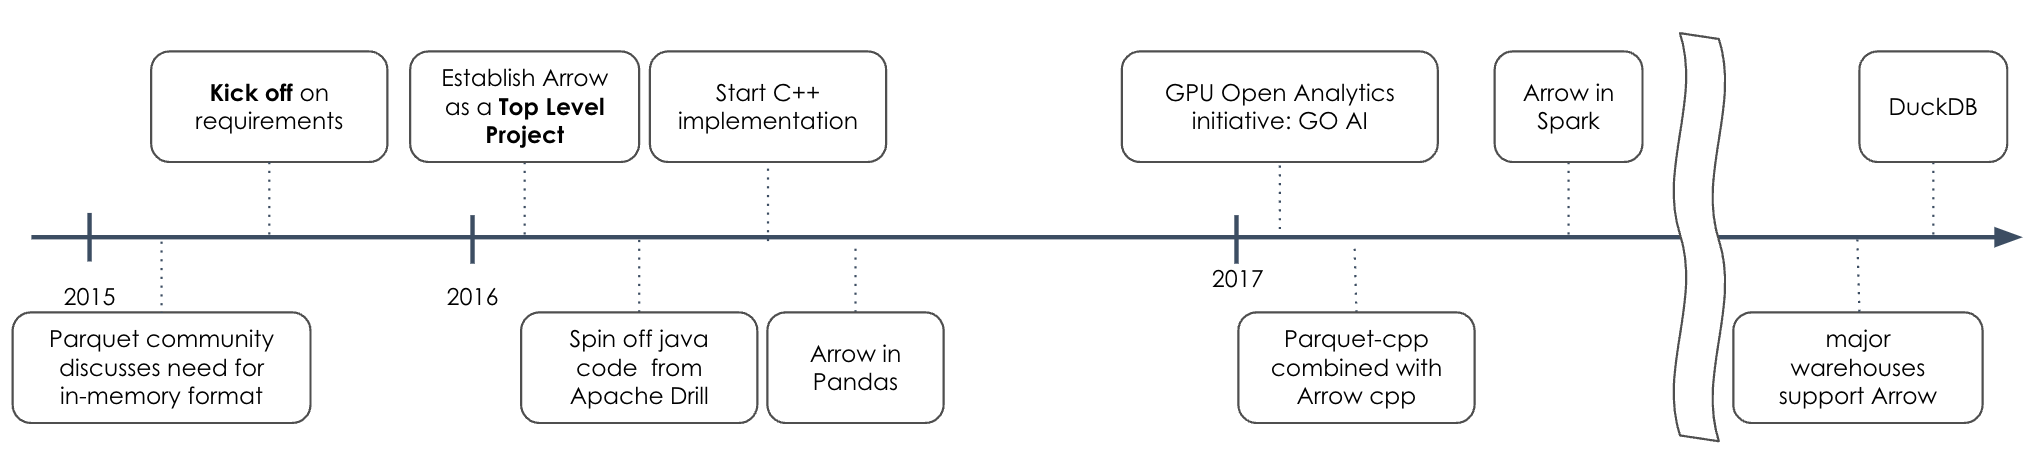 Arrow timeline